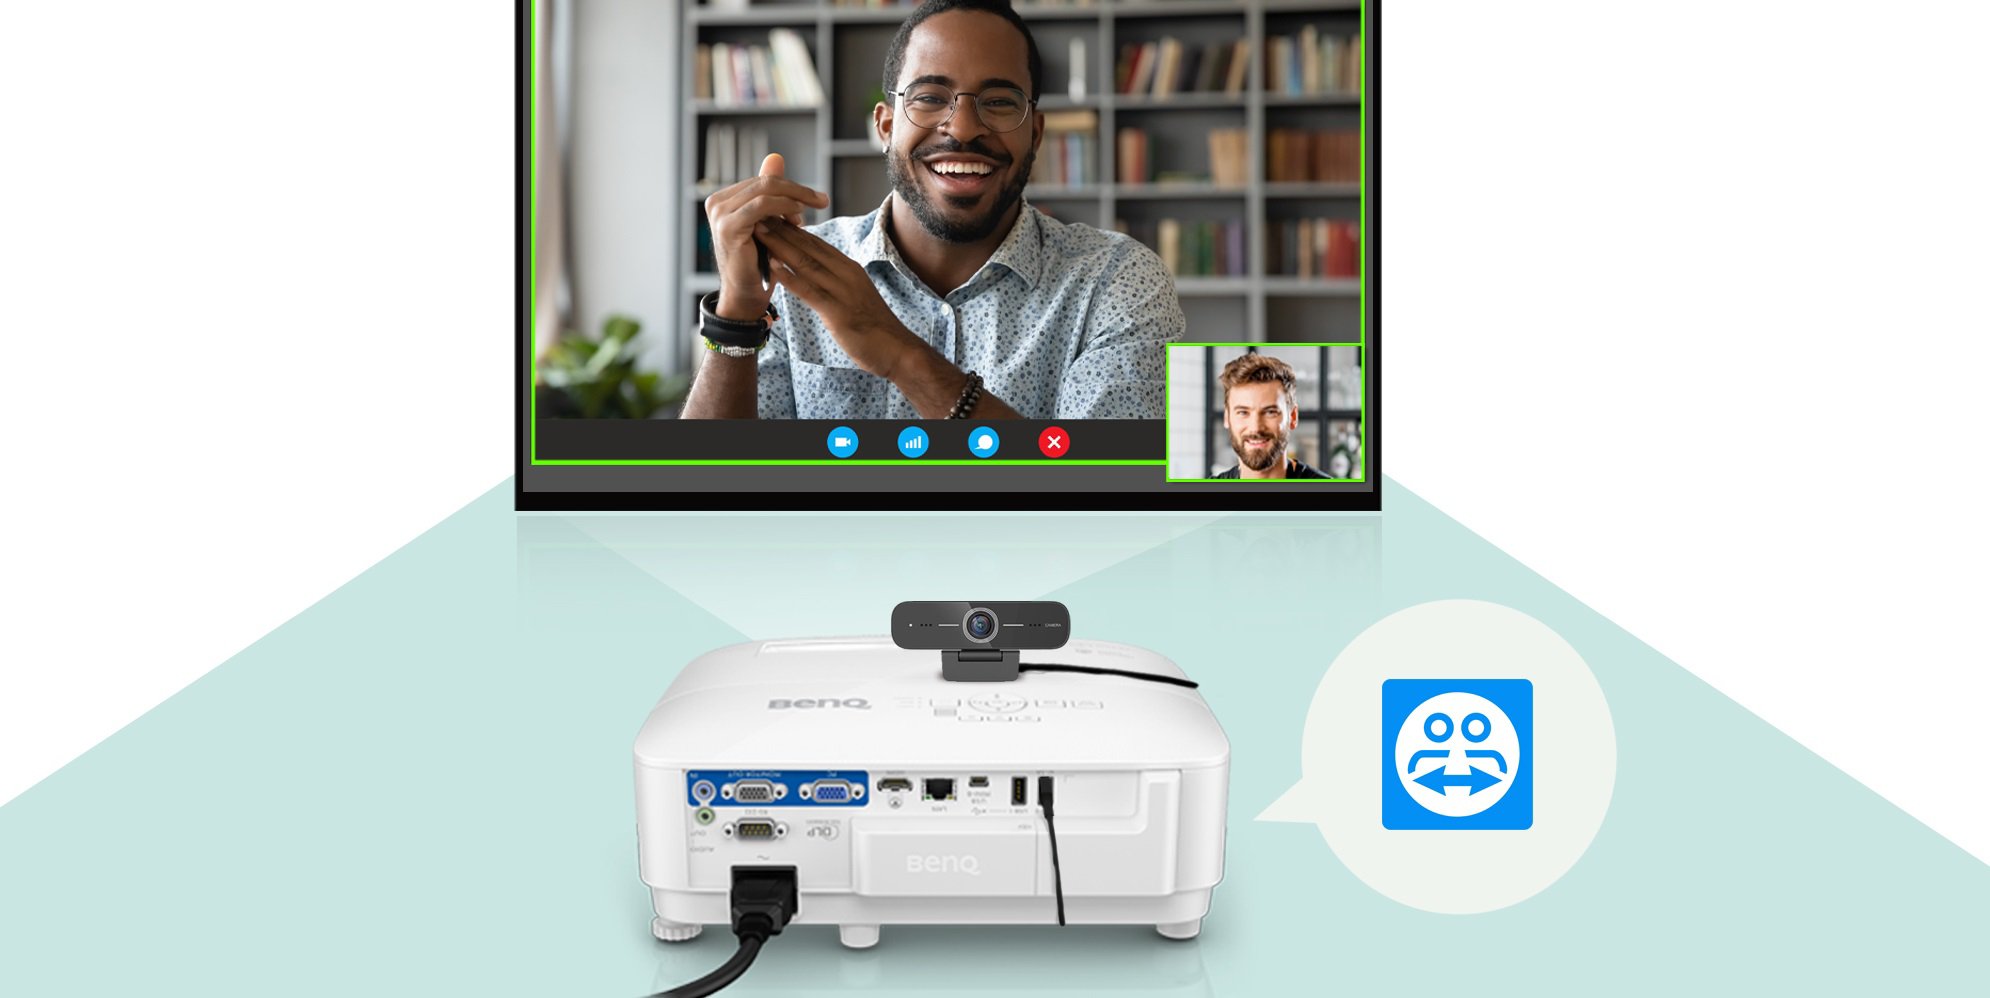 Thật dễ dàng để bắt đầu một hội thảo video với Máy chiếu thông minh cho doanh nghiệp BenQ EW800ST và thiết bị webcam BenQ DVY21  